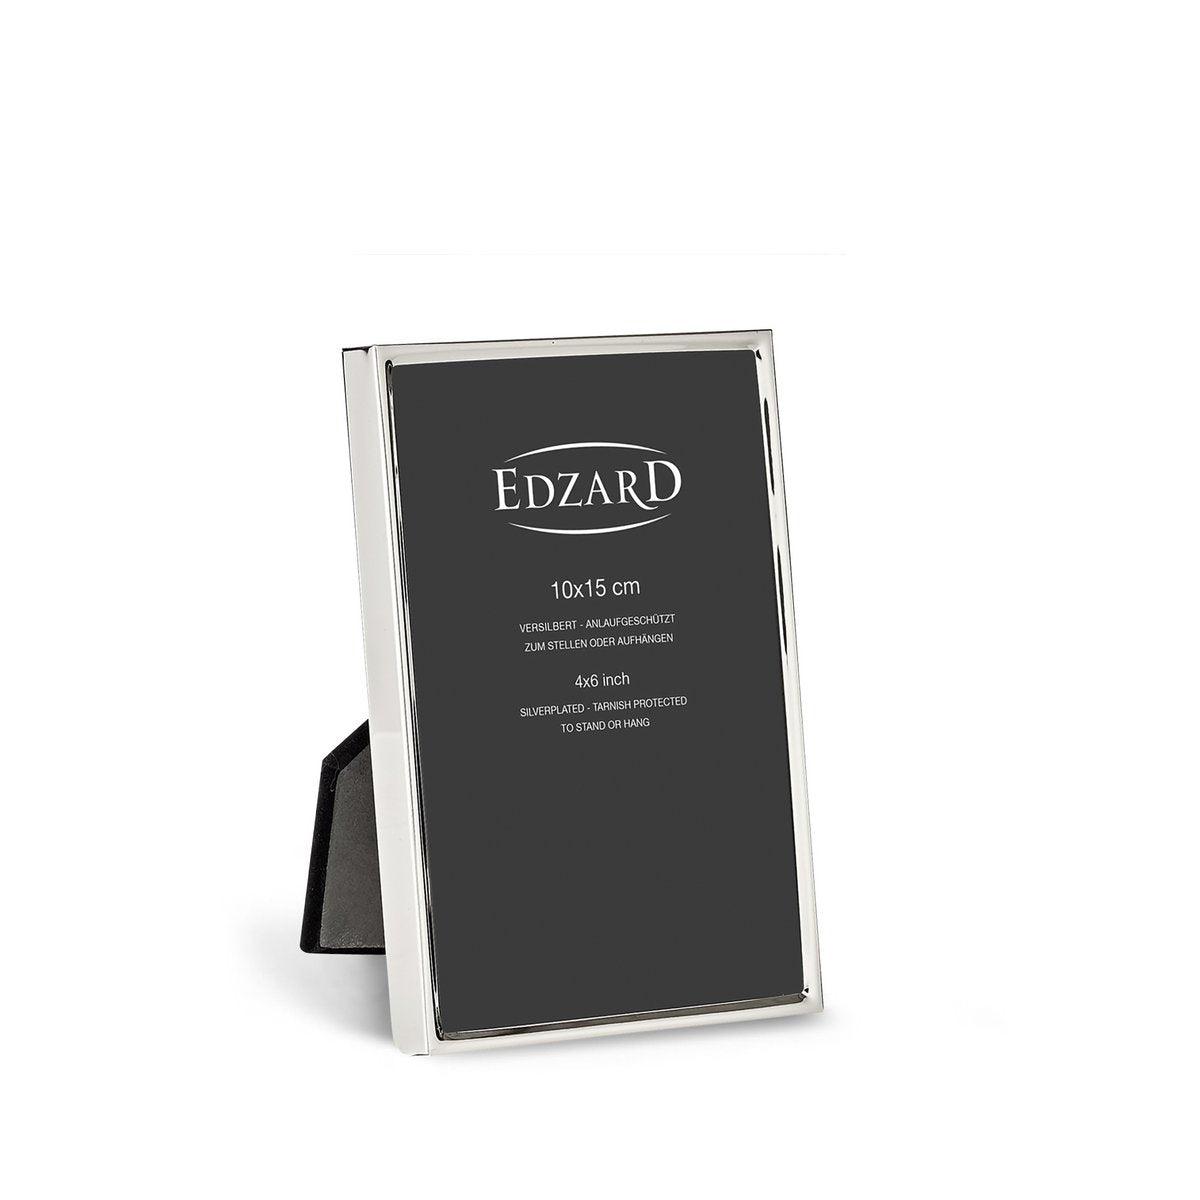 EDZARD Fotorahmen Otto für Foto 10 x 15 cm edel versilbert, anlaufgeschützt, mit 2 Aufhängern - HomeDesign Knaus